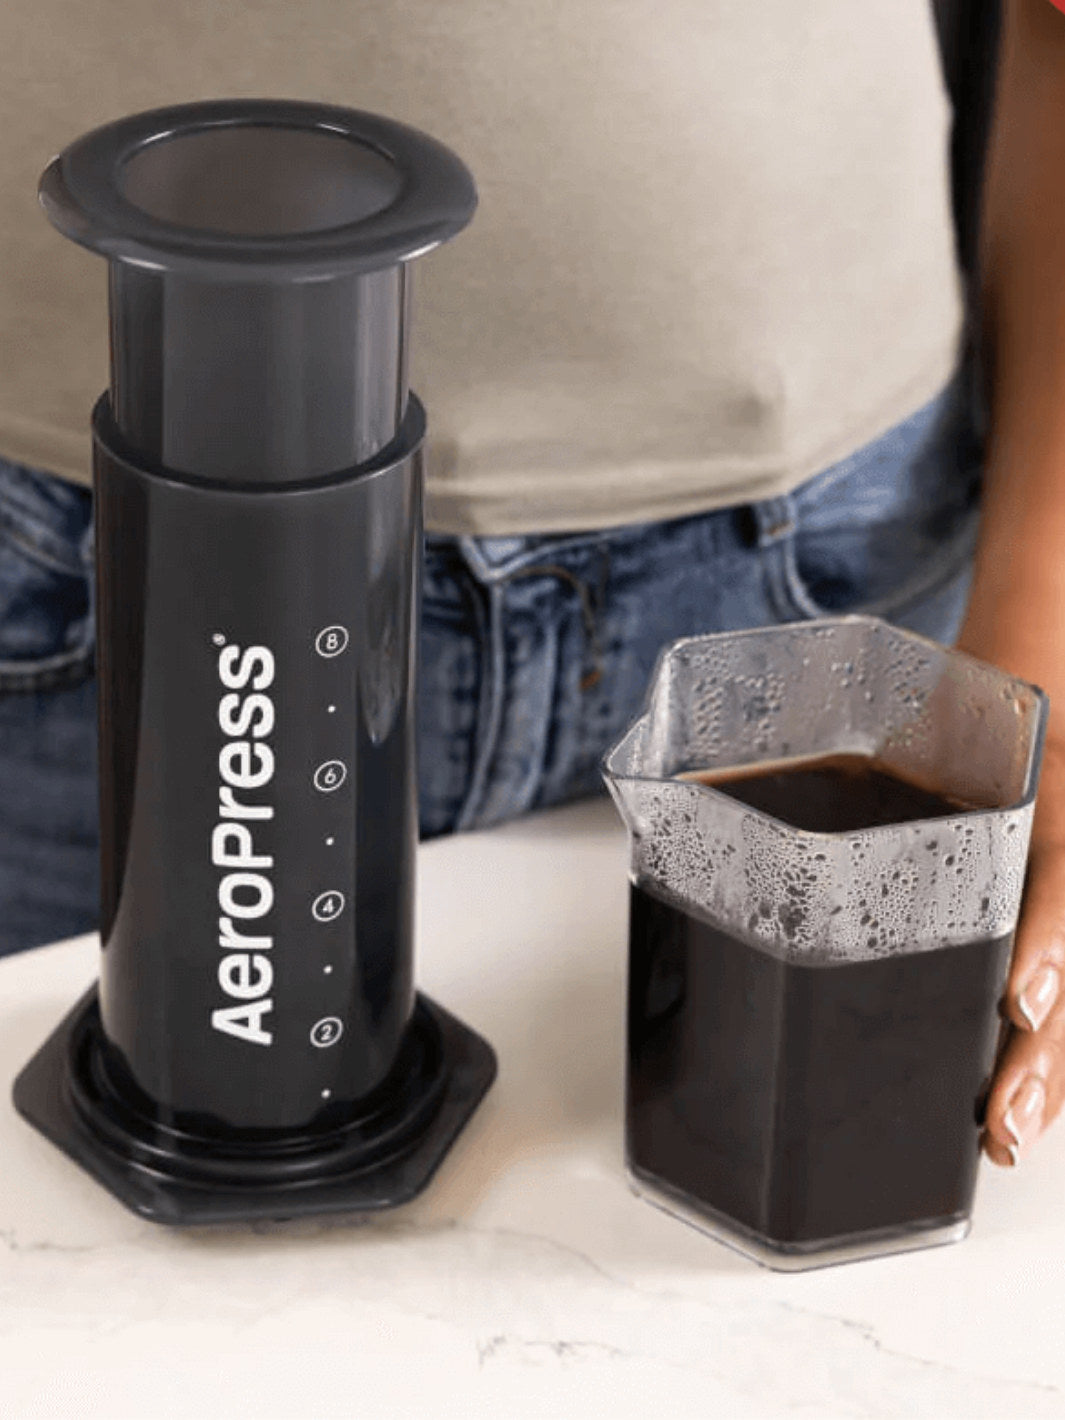 AeroPress XL Coffee Press / Press Brewers